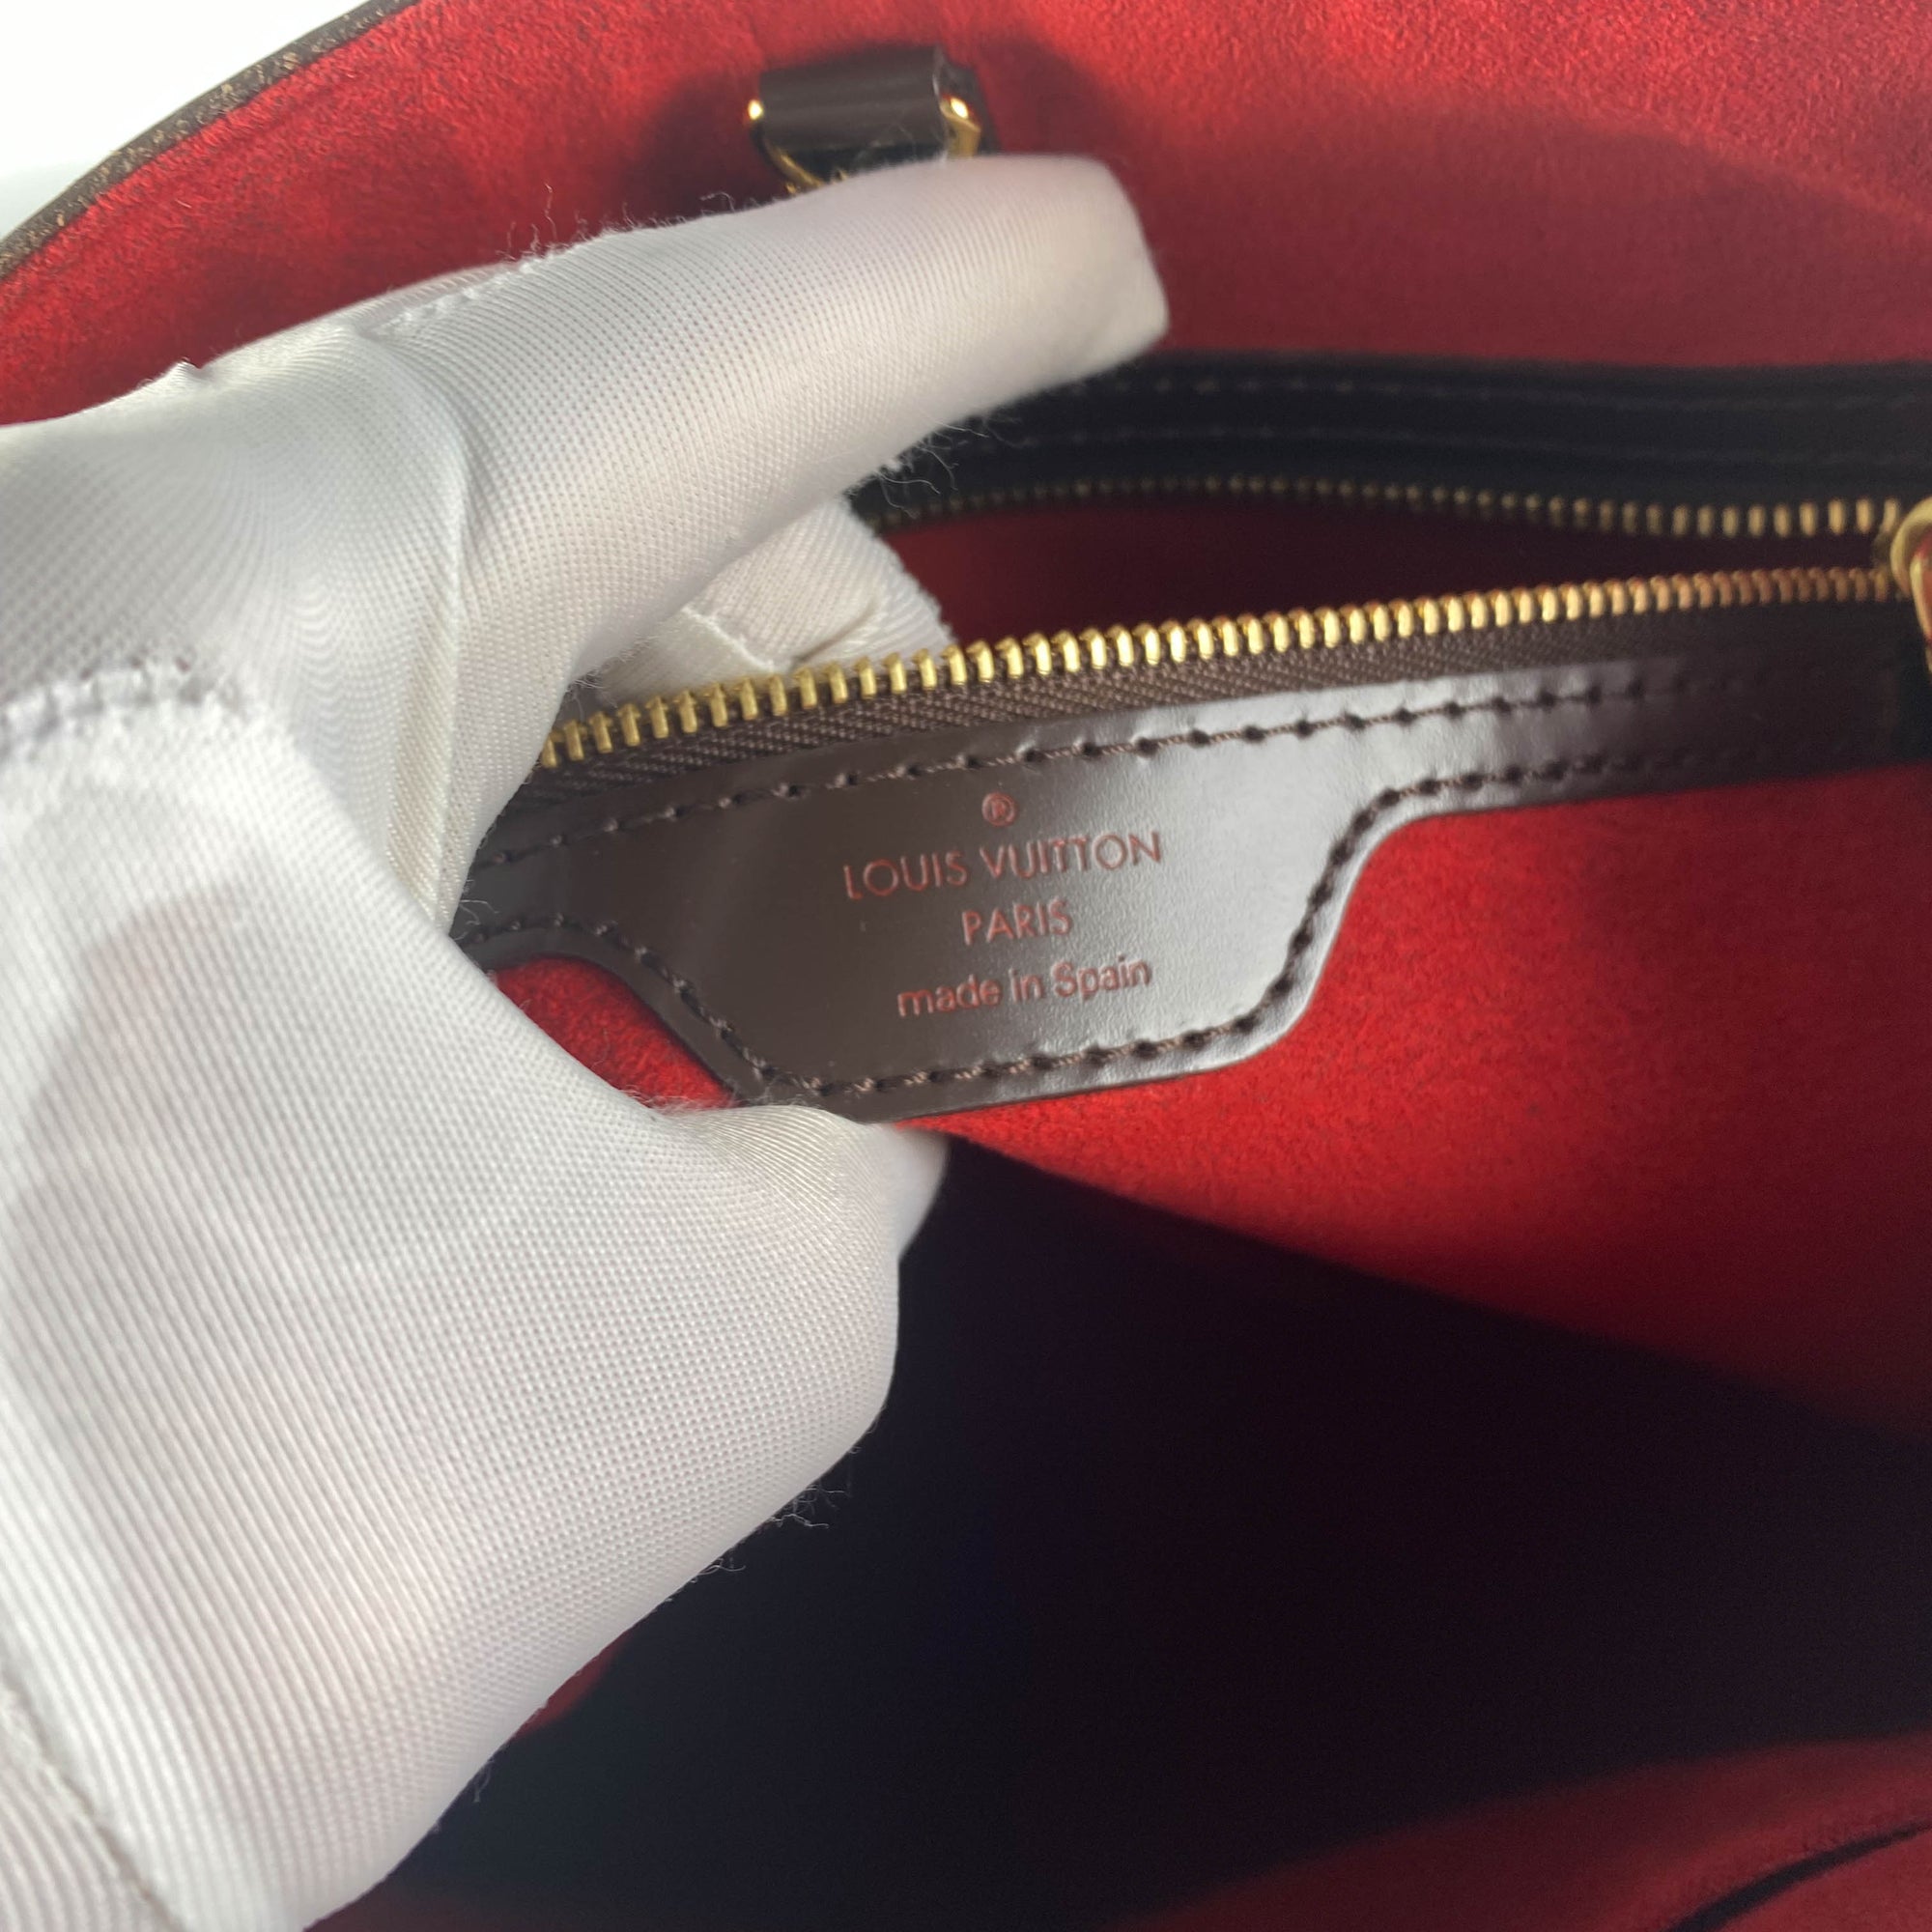 Louis Vuitton Hampstead PM .size  Louis vuitton shoulder bag, Vuitton, Louis  vuitton